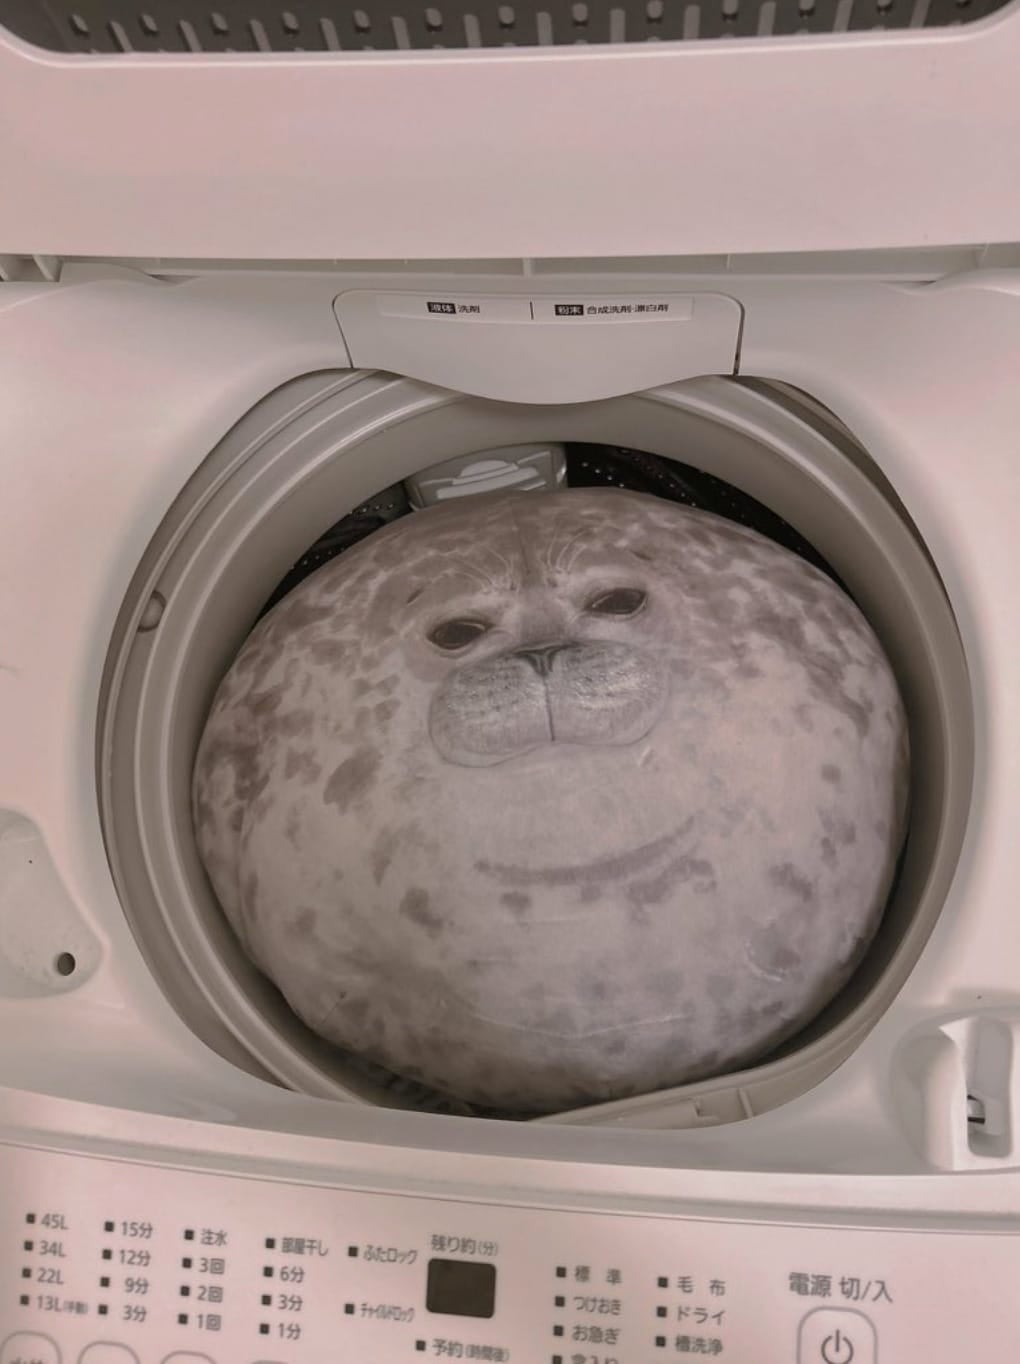 ตุ๊กตาแมวน้ำลายจุดตัวอ้วนในเครื่องซักผ้า